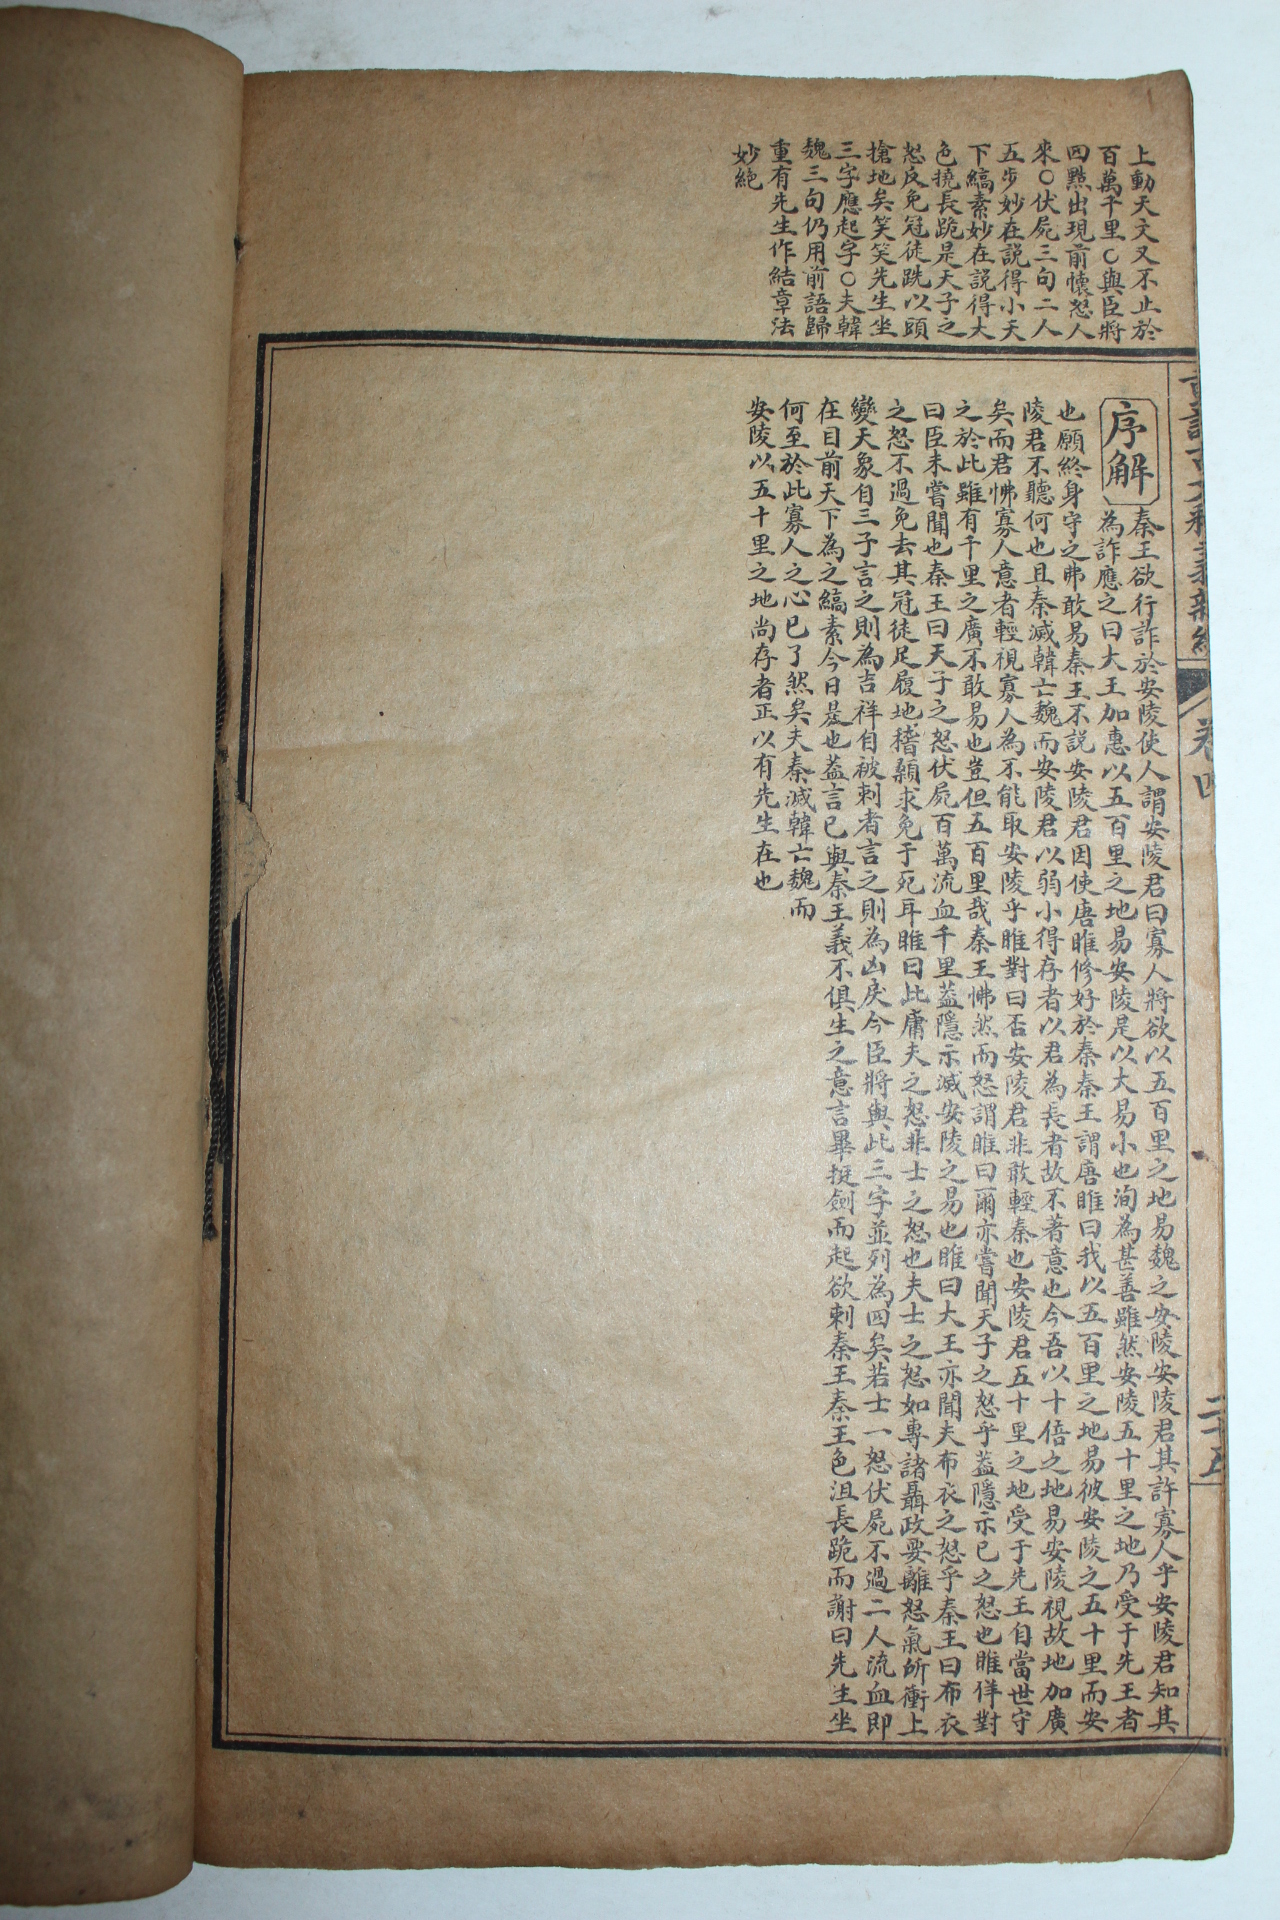 중국상해본 중정고문석의신편(重訂古文釋義新編)권3,4  1책